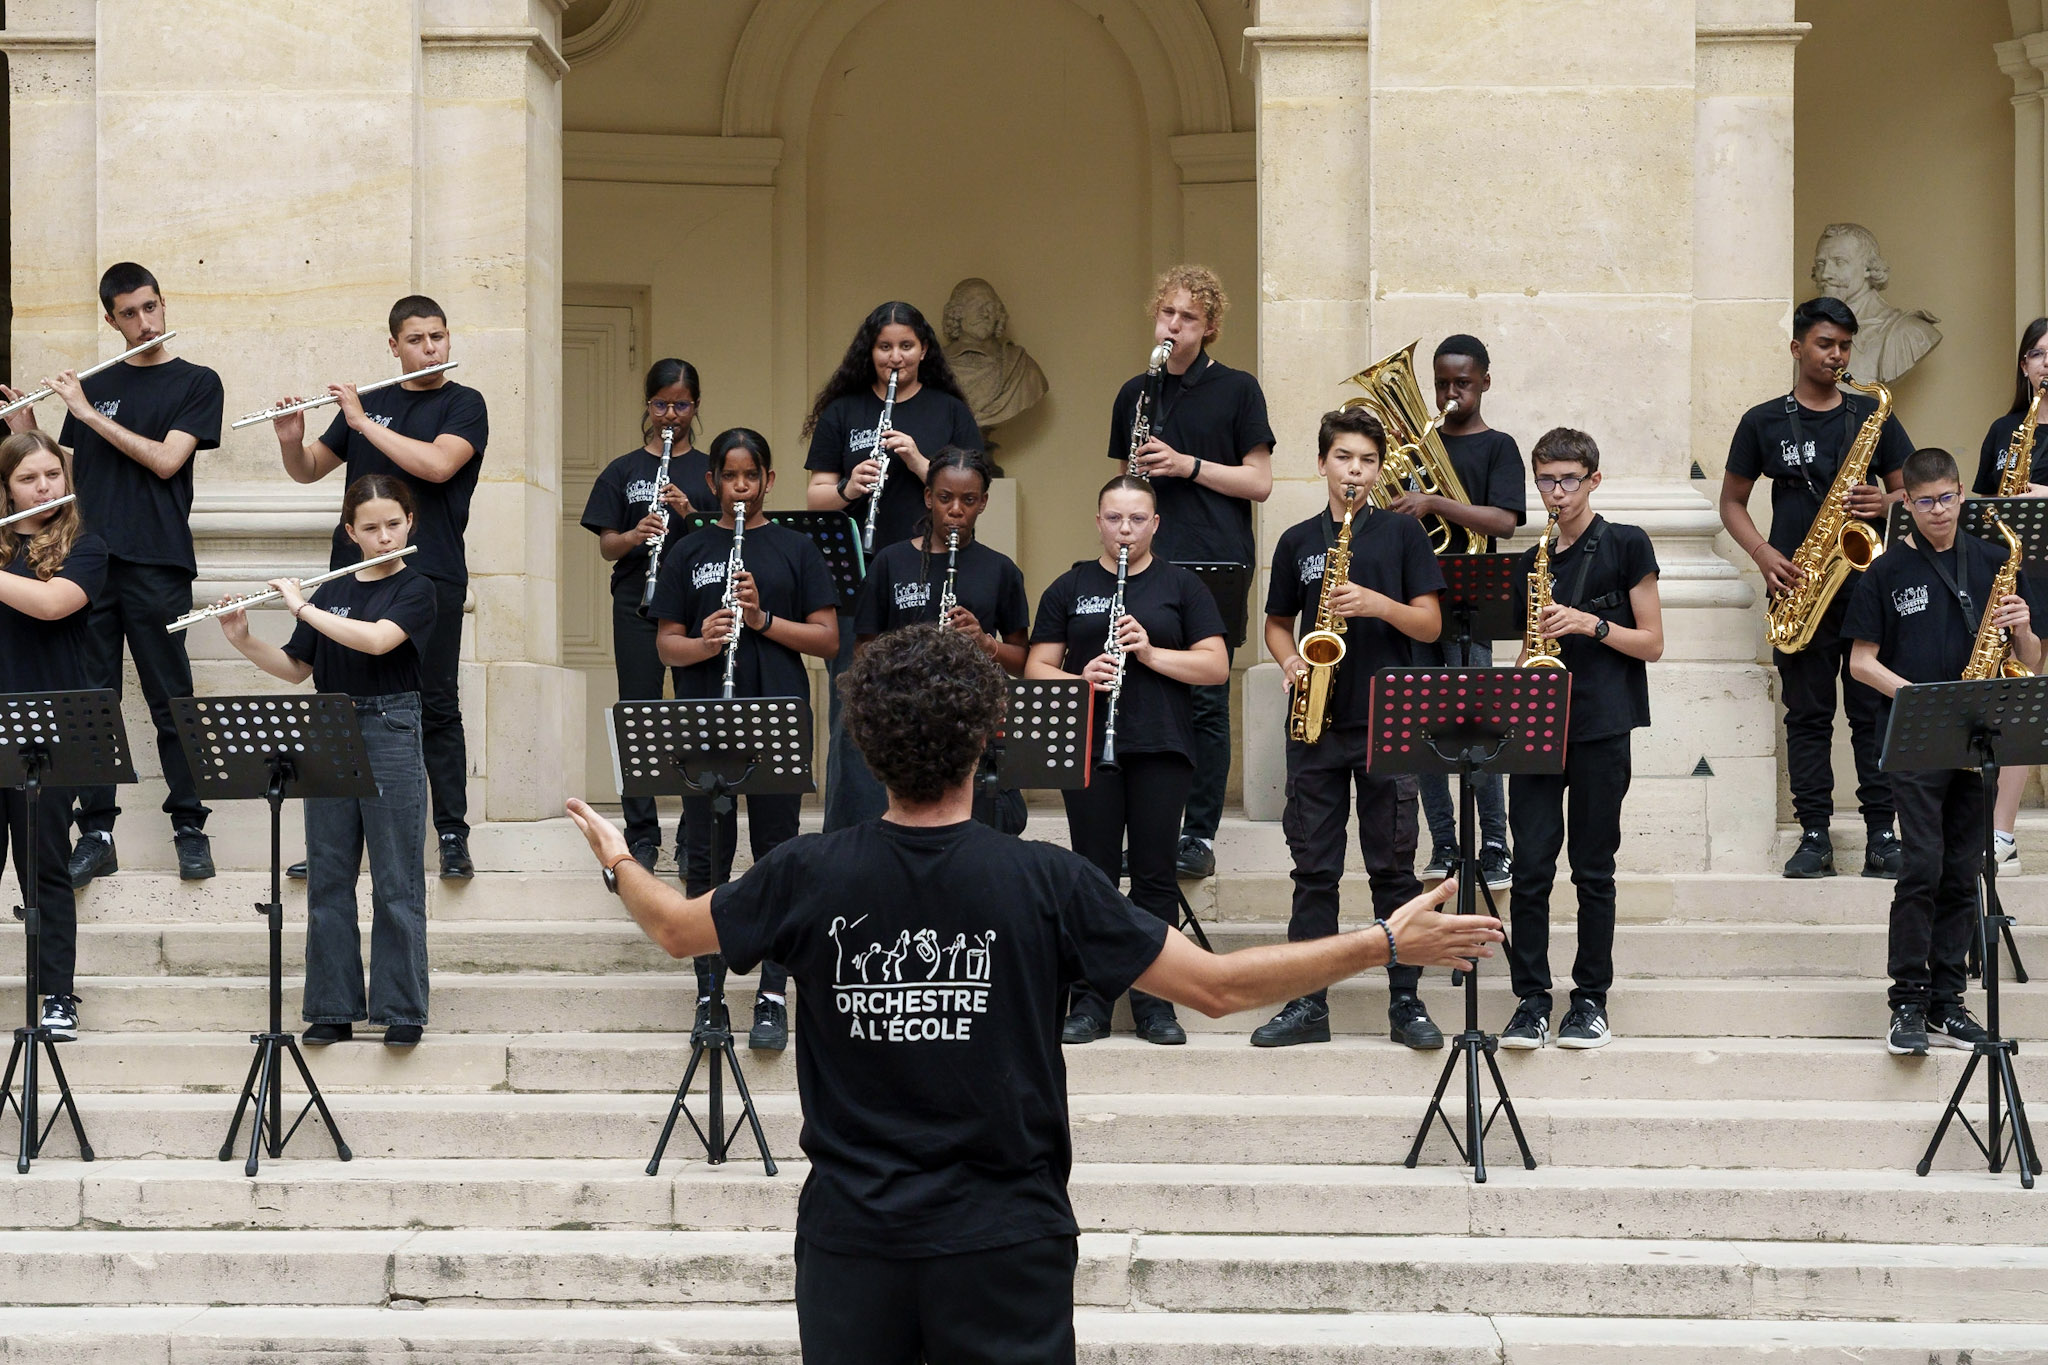 L'orchestre au collège Les Maillettes de Moissy-Cramayel (77) dans la cour de l'Institut de France 